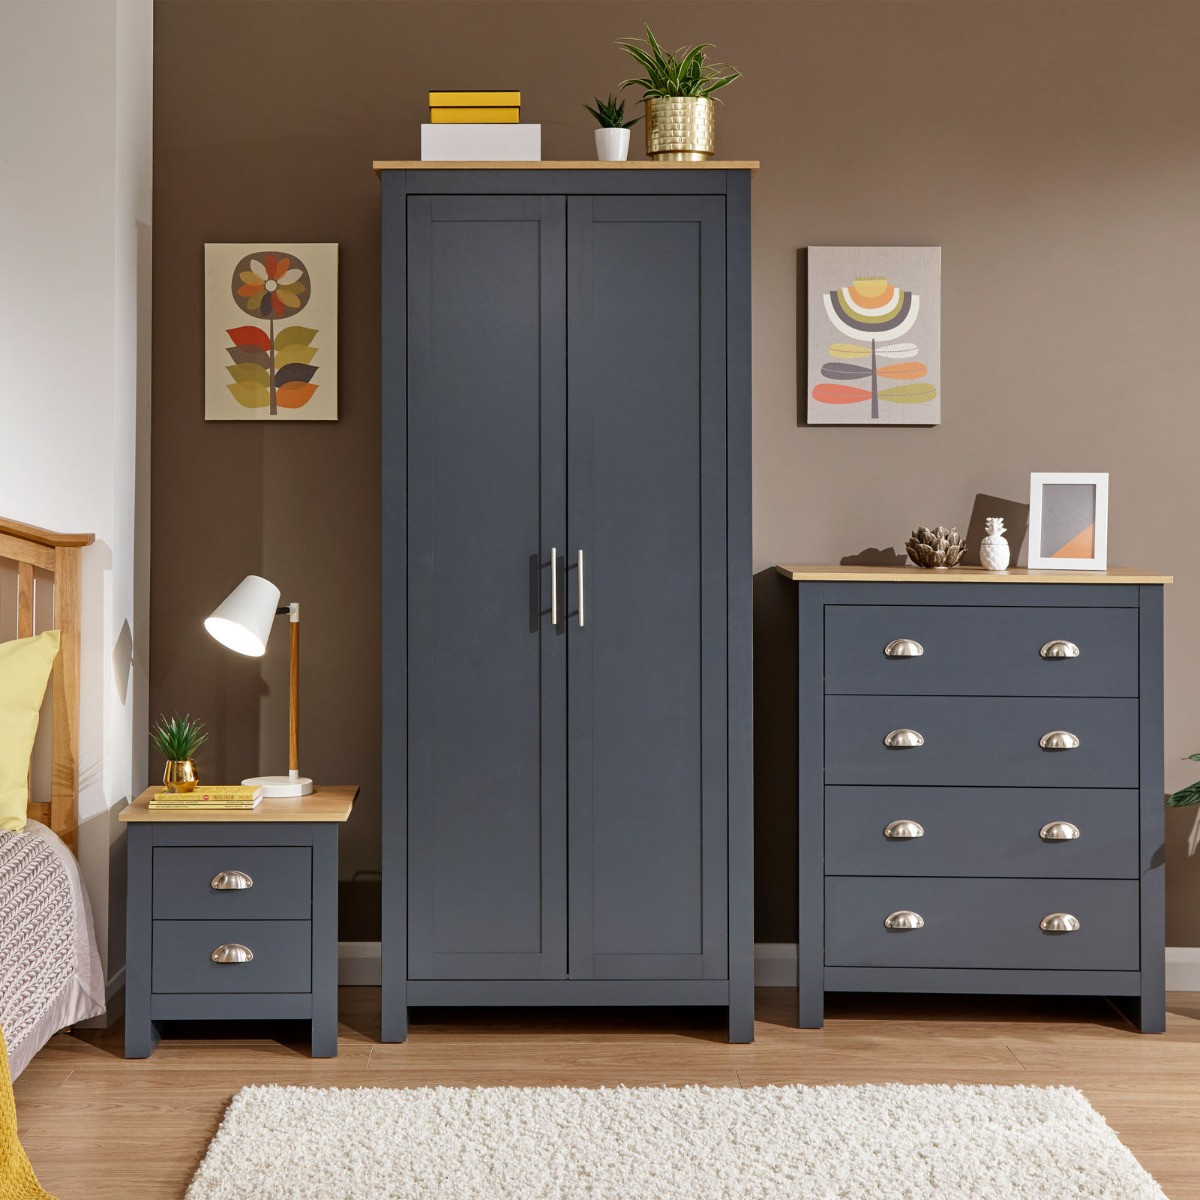 Lancaster 3 Piece Bedroom Furniture Set - Slate Blue>